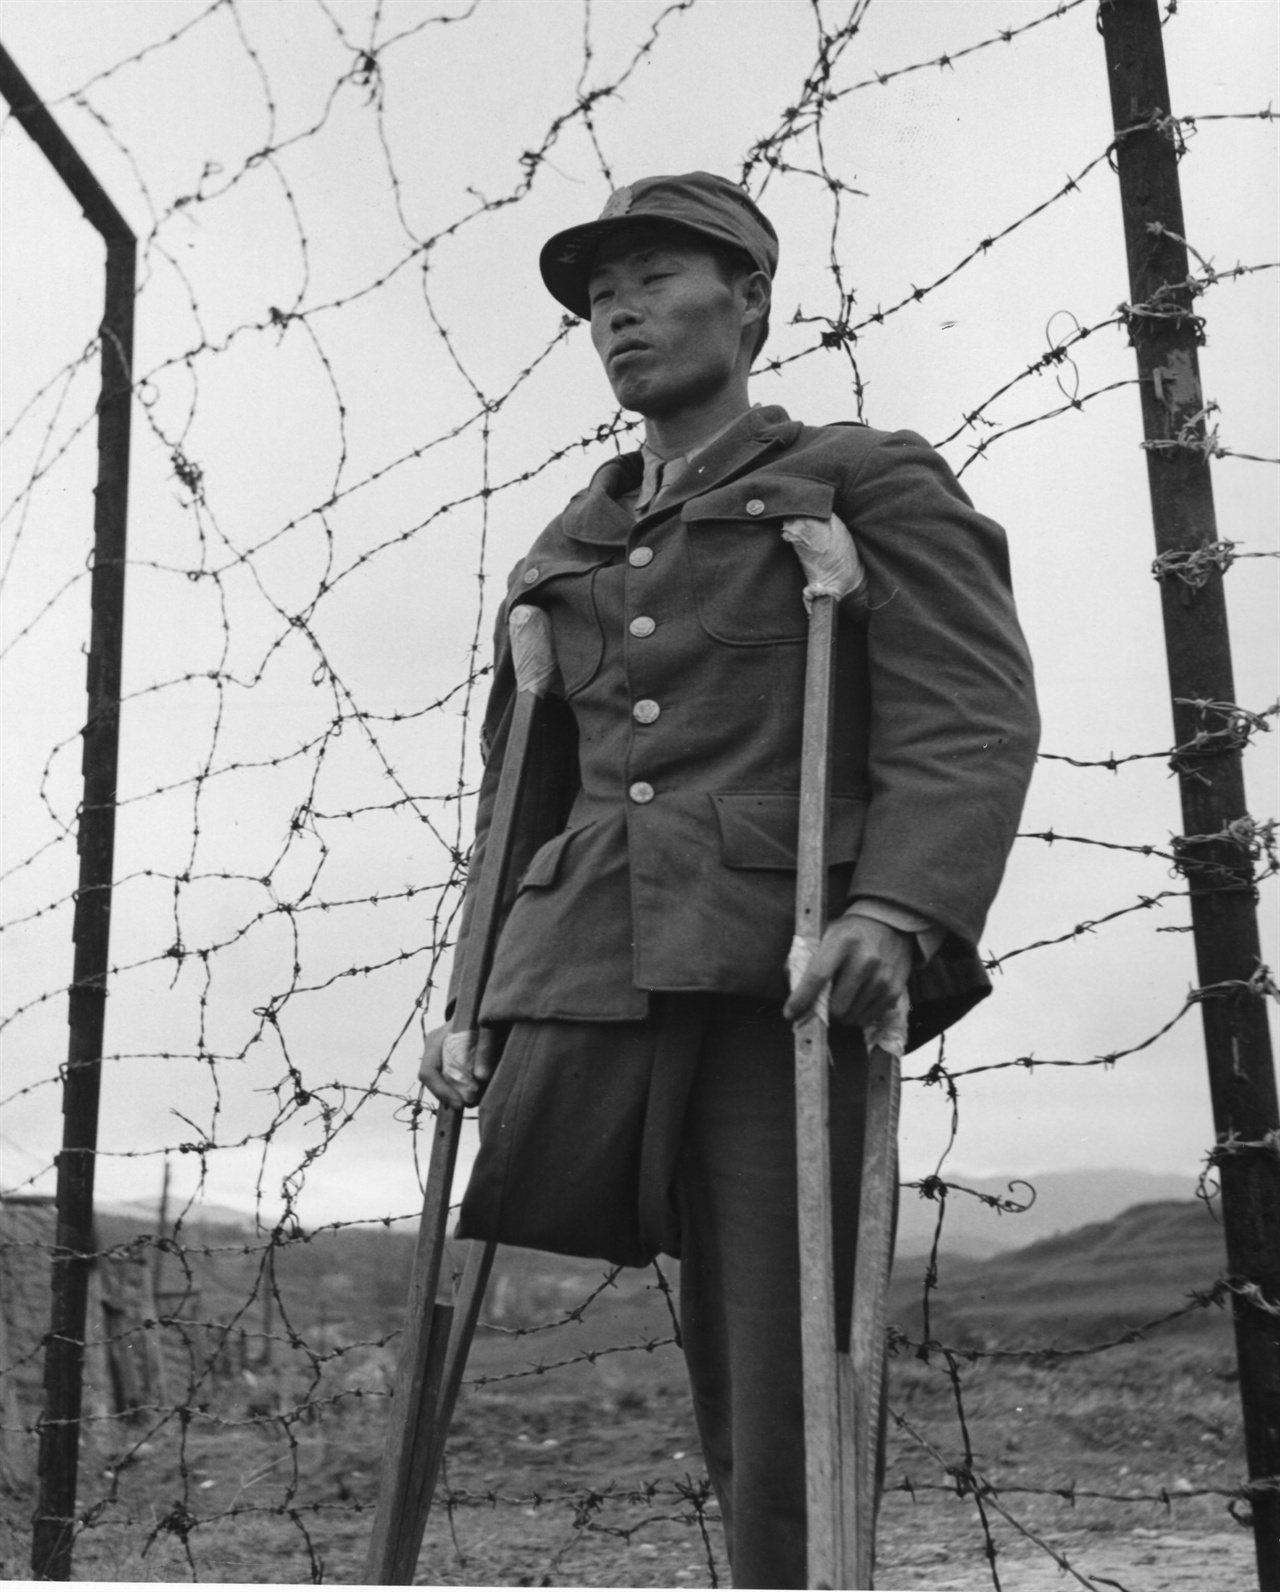 1950. 10. 옹진전투에서 한쪽 다리를 잃은 국군 특무상사가 목발을 짚은 채 침통한 표정으로 철조망 앞에 서 있다. 이는 전쟁에 신음하는 한반도를 상징하는 모습이 아닐까?